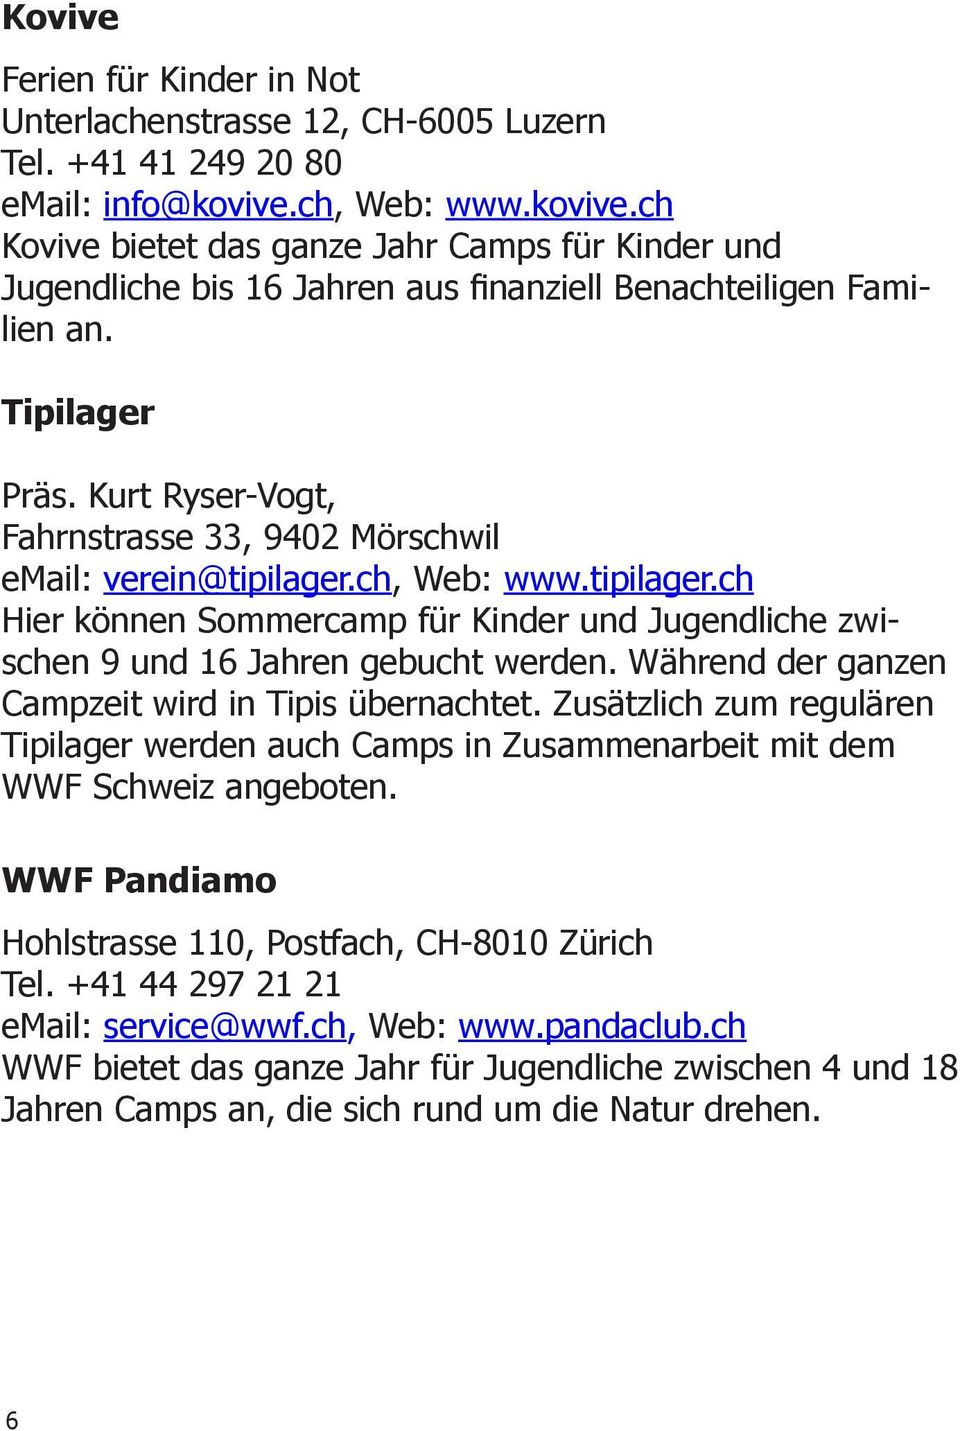 Kurt Ryser-Vogt, Fahrnstrasse 33, 9402 Mörschwil email: verein@tipilager.ch, Web: www.tipilager.ch Hier können Sommercamp für Kinder und Jugendliche zwischen 9 und 16 Jahren gebucht werden.